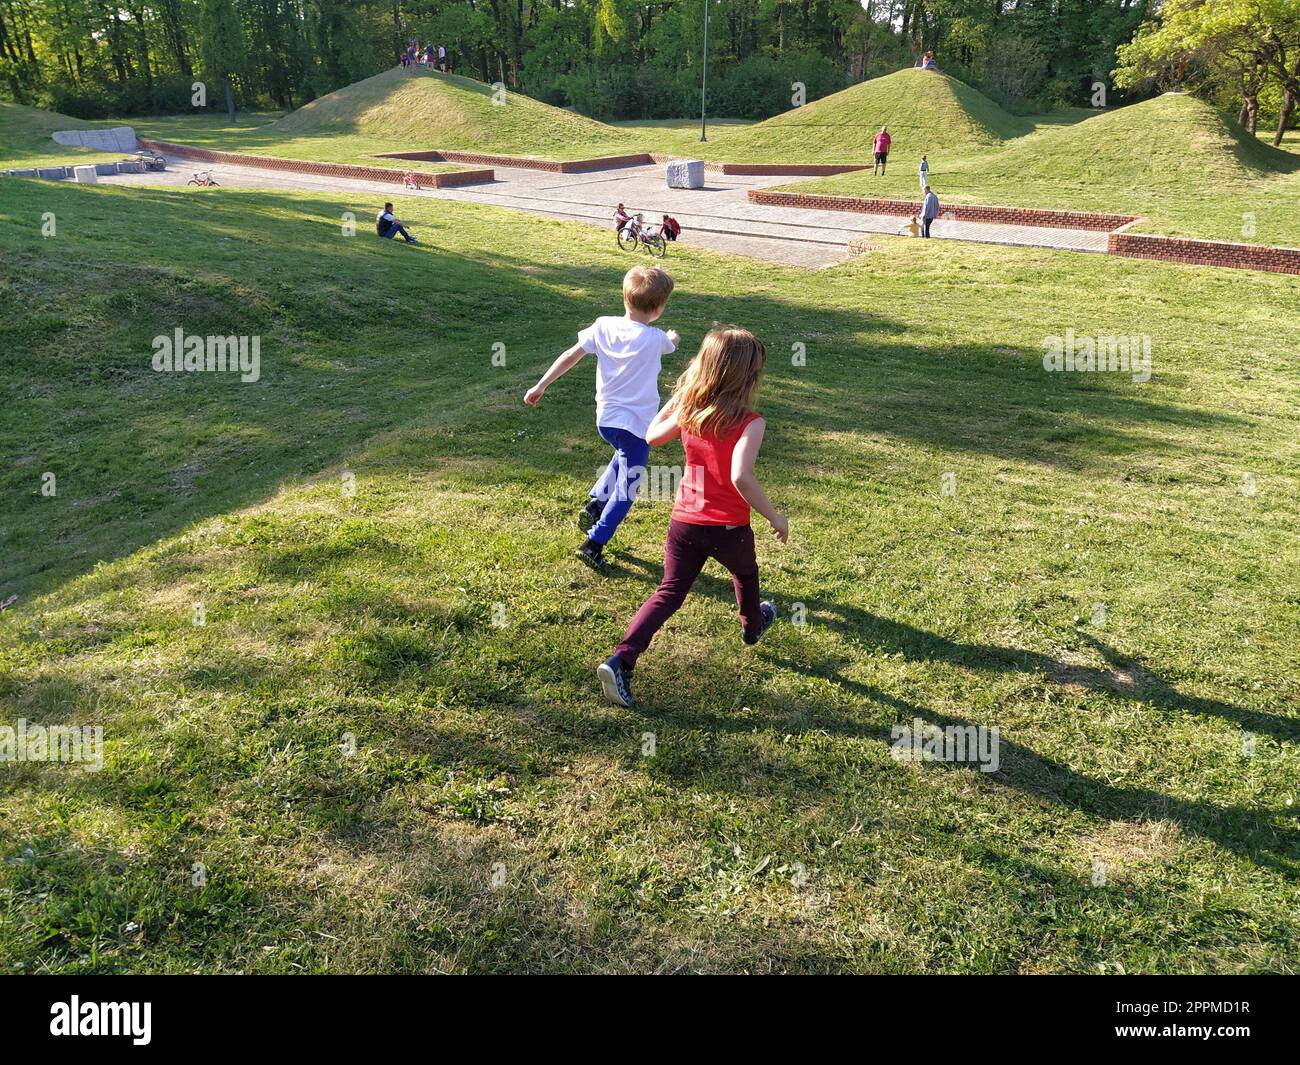 Sremska Mitrovica, Serbien - 24. April 2020 - Kinder Rennen im Park. Ein Junge in einem weißen T-Shirt und einer blauen Hose. Mädchen in einem roten Tanktop und einer Hose. Grüner Rasen oder Feld. Menschen gehen in einem Stadtpark Stockfoto